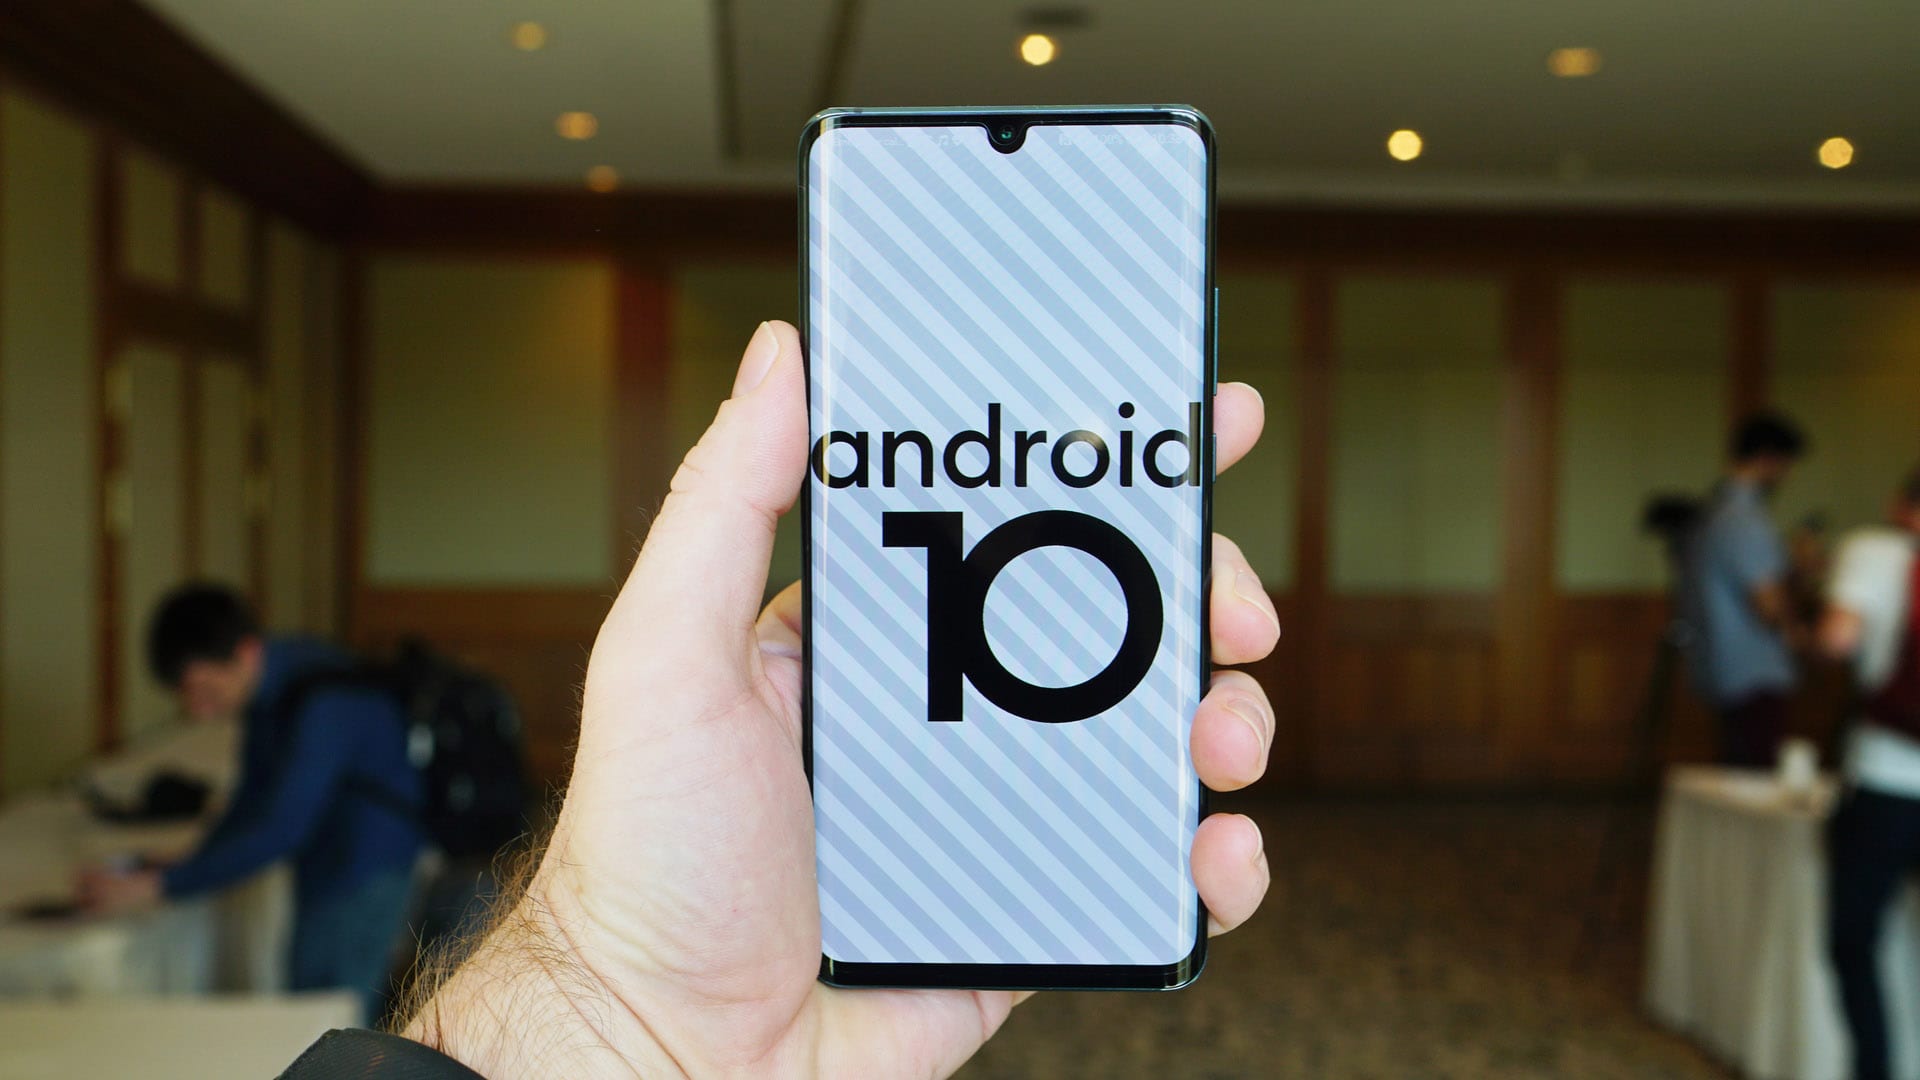 شركة Google تفرض على جميع الأجهزة التي سيتم إطلاقها بعد تاريخ 31 يناير 2020 أن تعمل بنظام Android 10